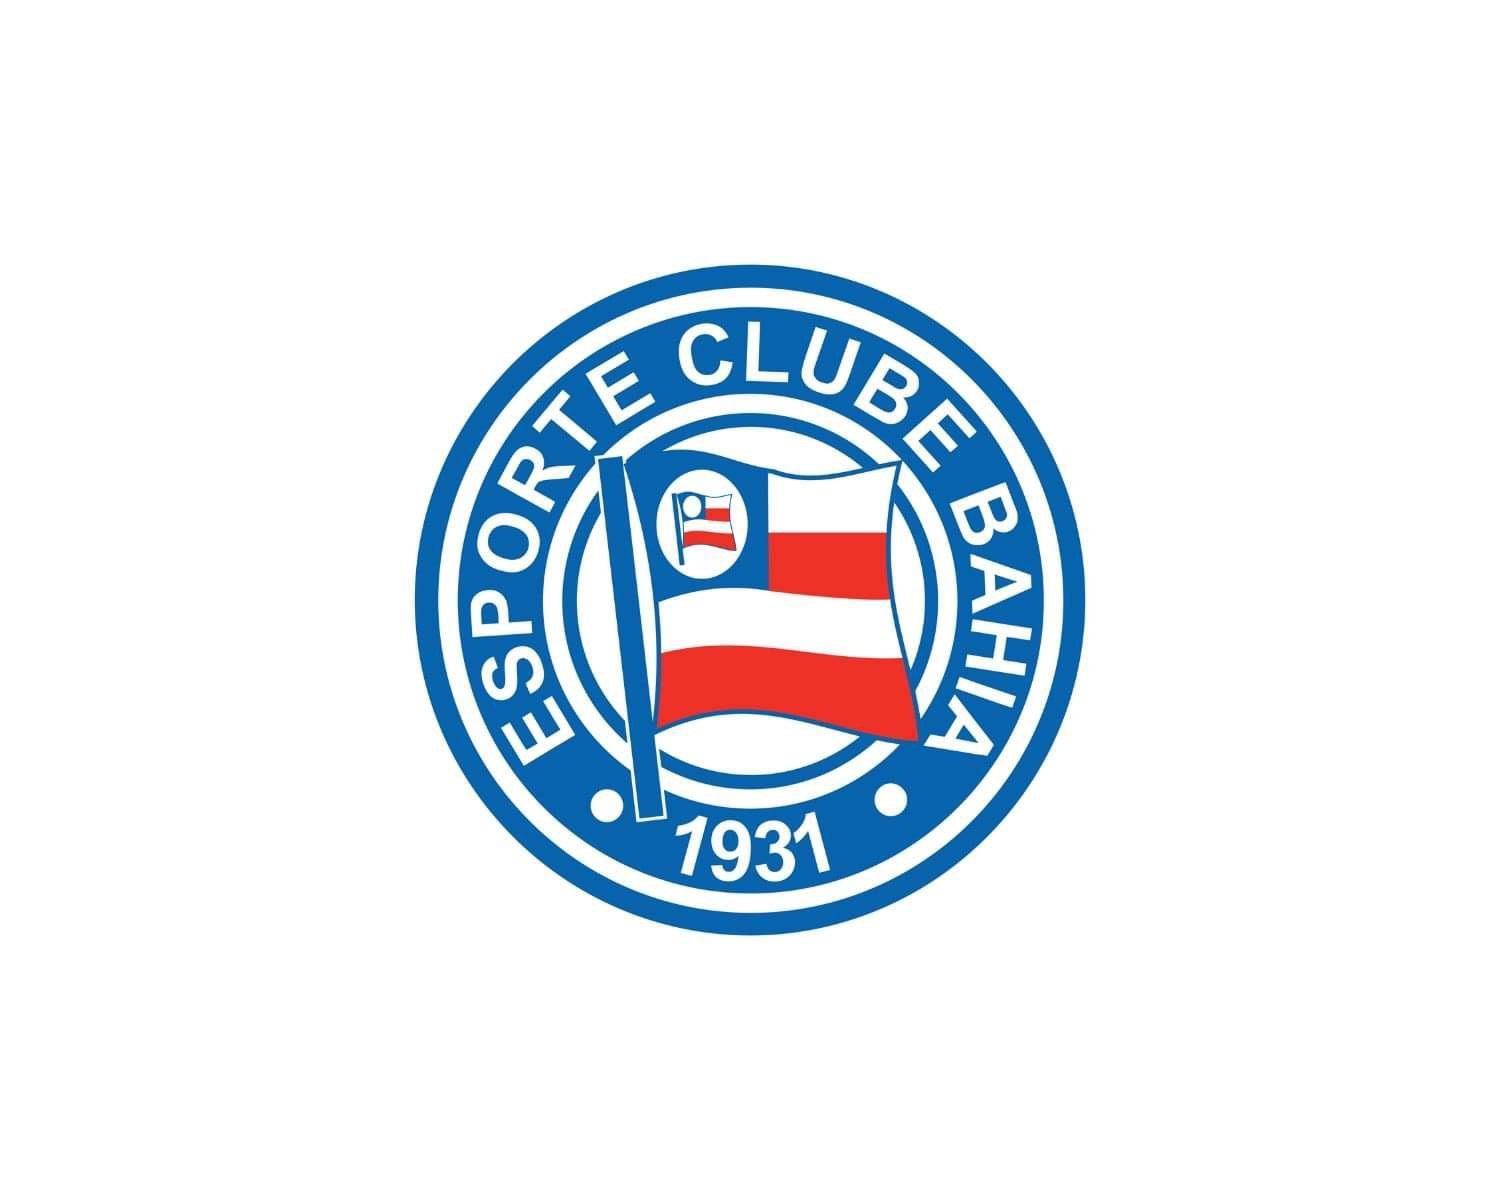 ec-bahia-15-football-club-facts